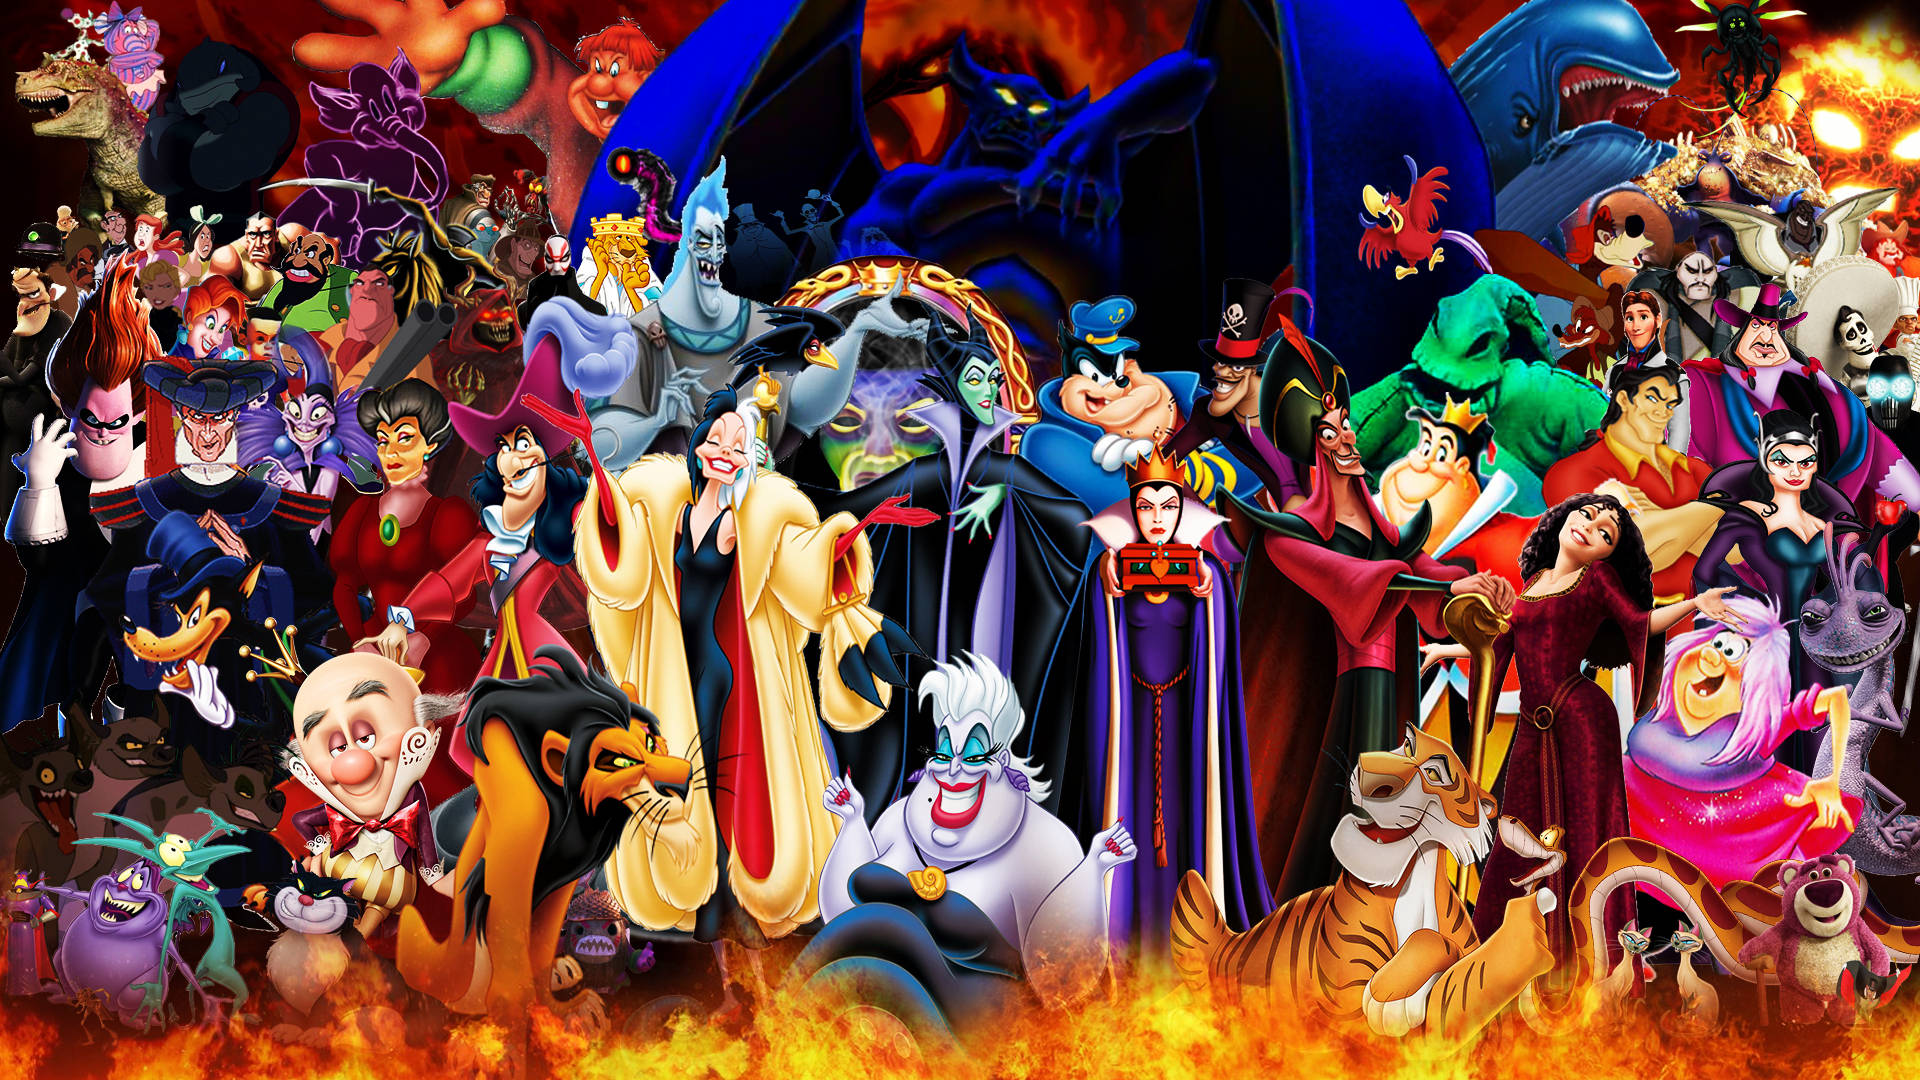 Disney Villains In Fire Wallpaper